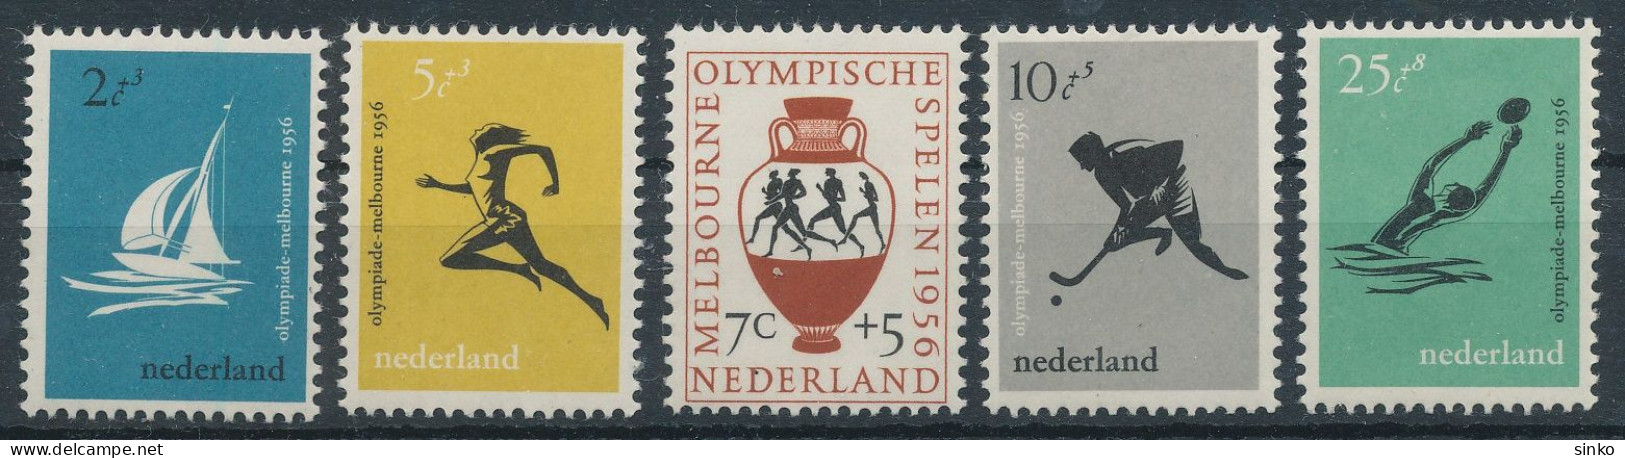 1956. Netherlands - Olympics - Zomer 1956: Melbourne